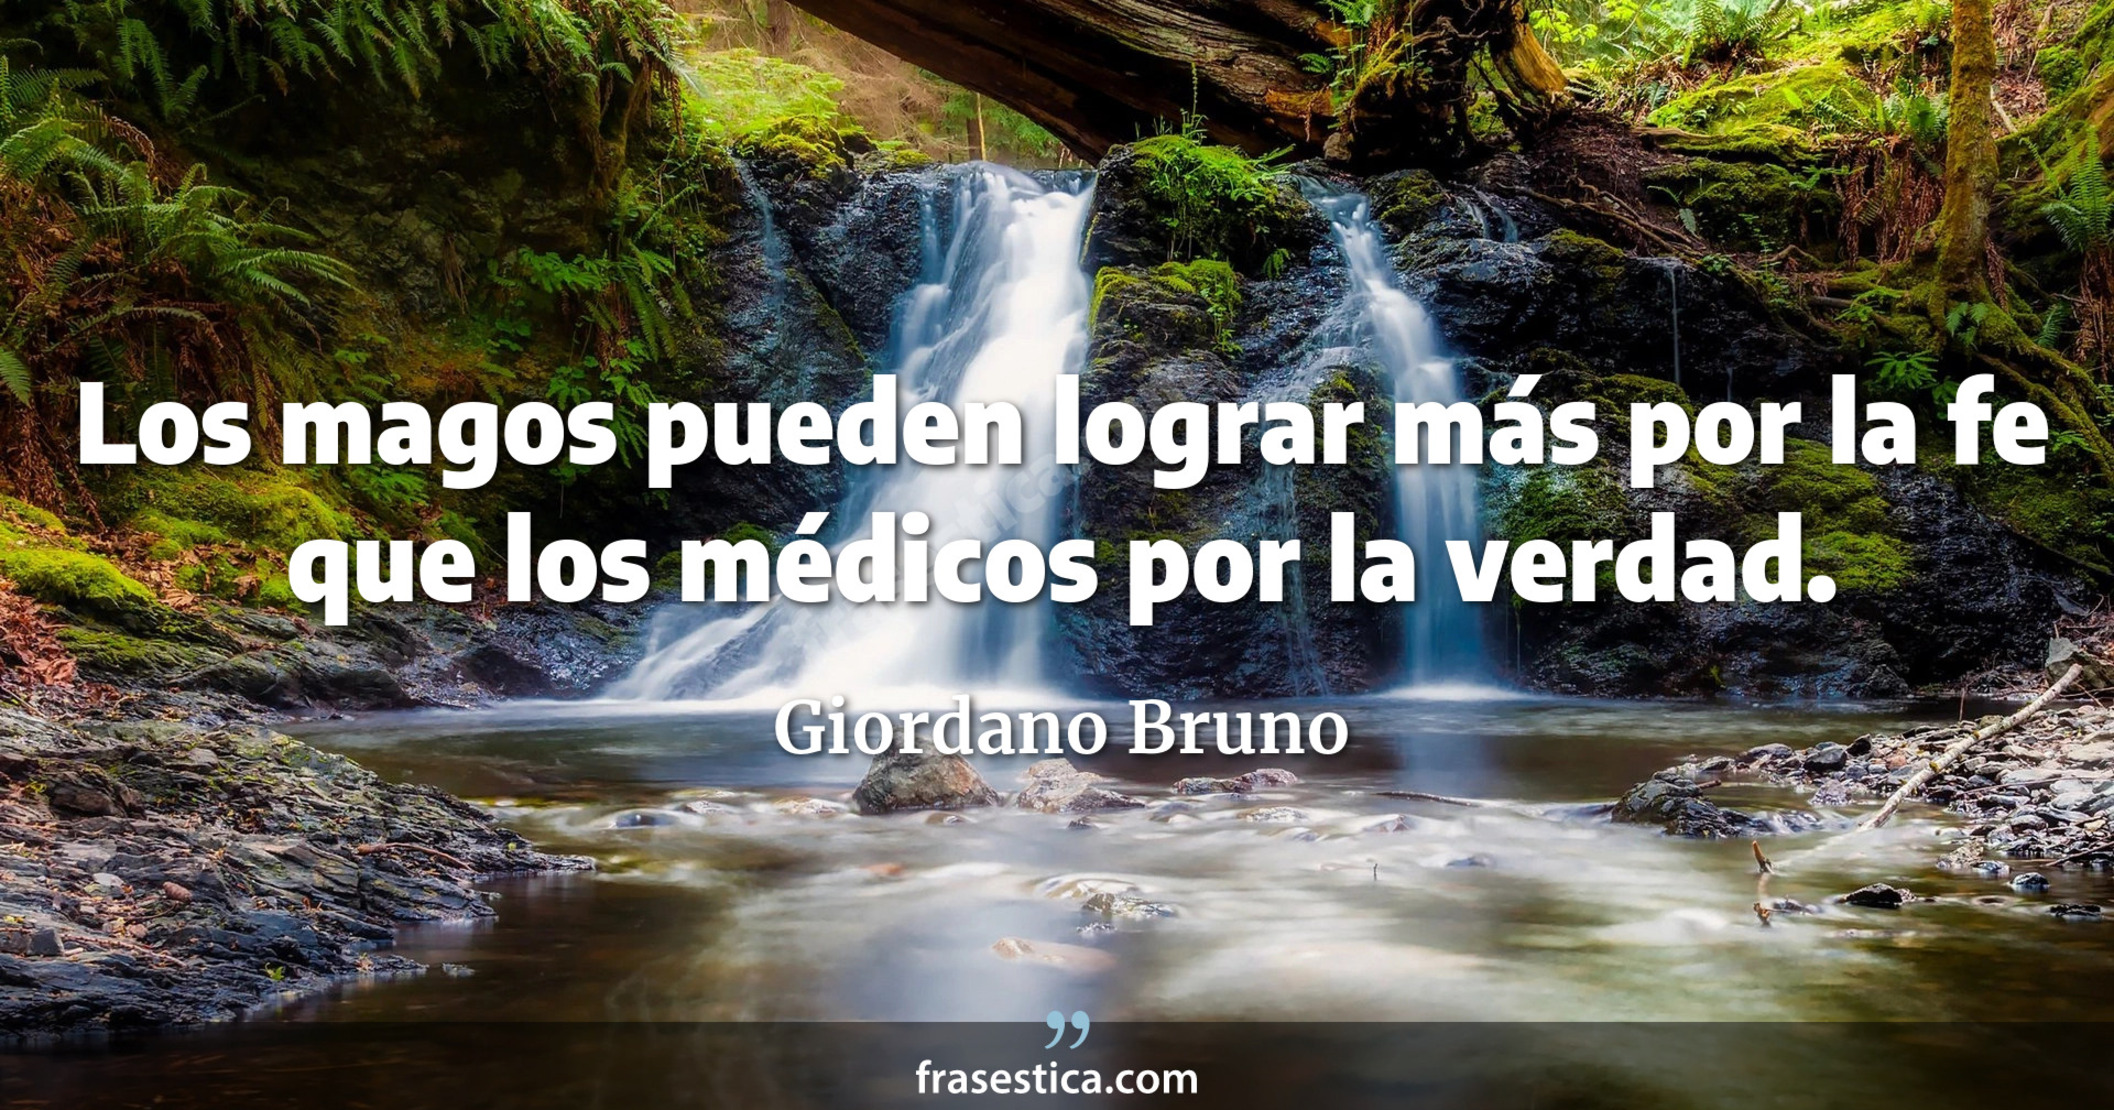 Los magos pueden lograr más por la fe que los médicos por la verdad. - Giordano Bruno